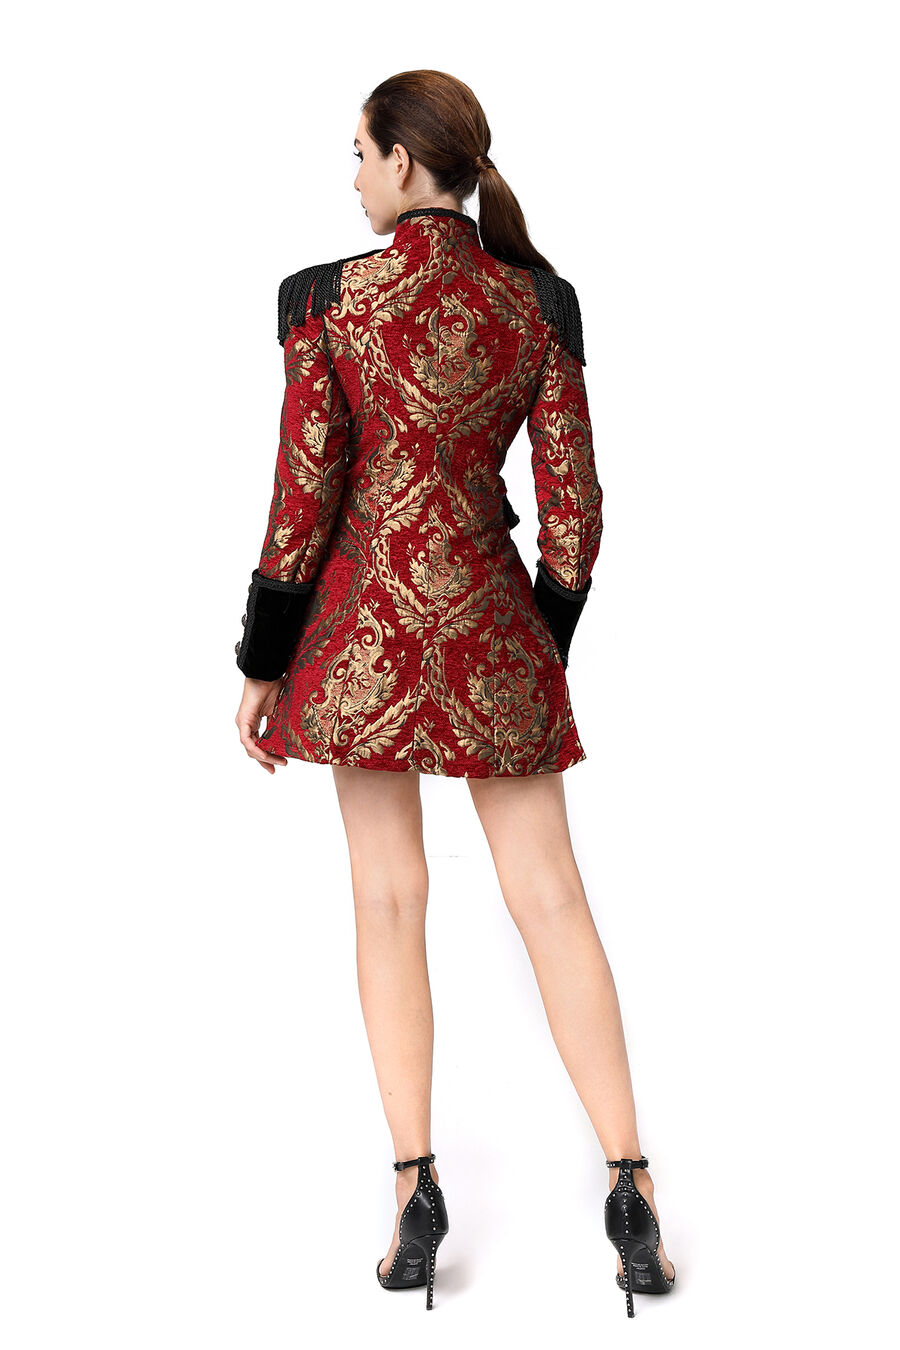 photo n°2 : veste femme  jacquard gothique queue-de-pie